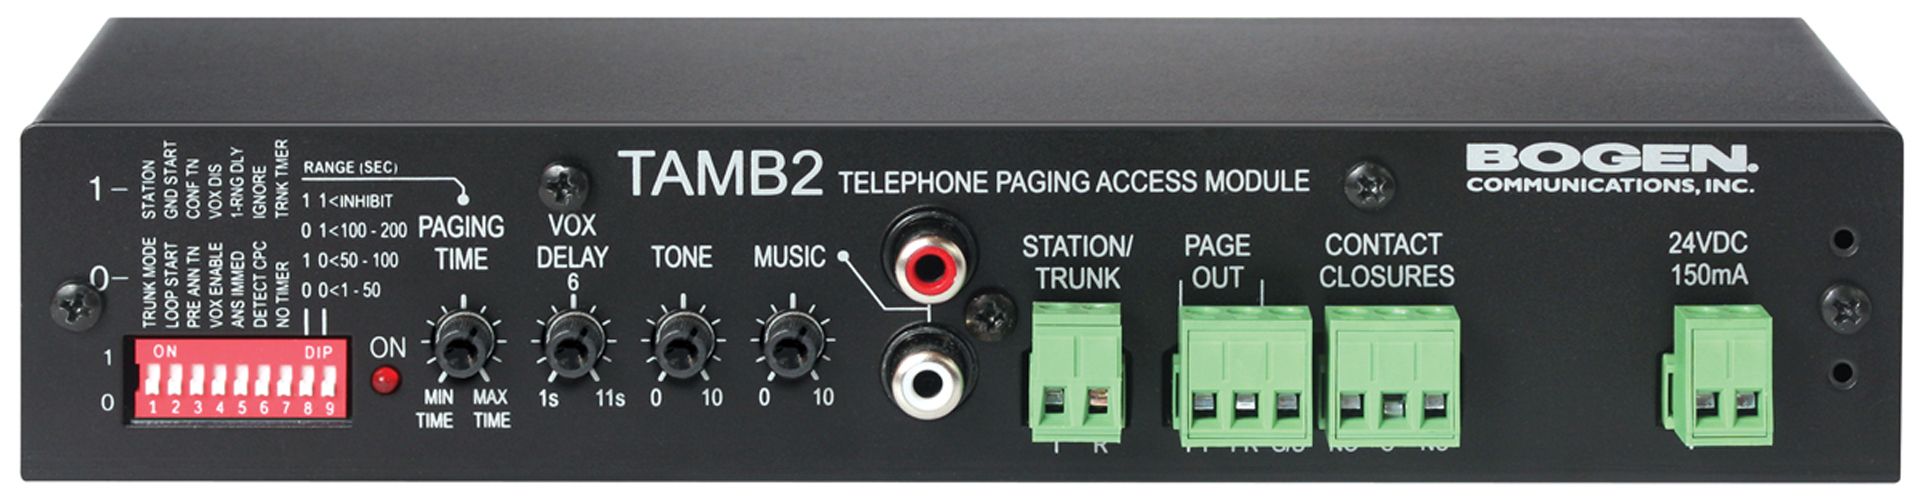 Bogen TAMB2PS Telephone Paging Access Module Ver 2 w/ Power Supply - Open Box TAMB2PS-OB - The Telecom Spot